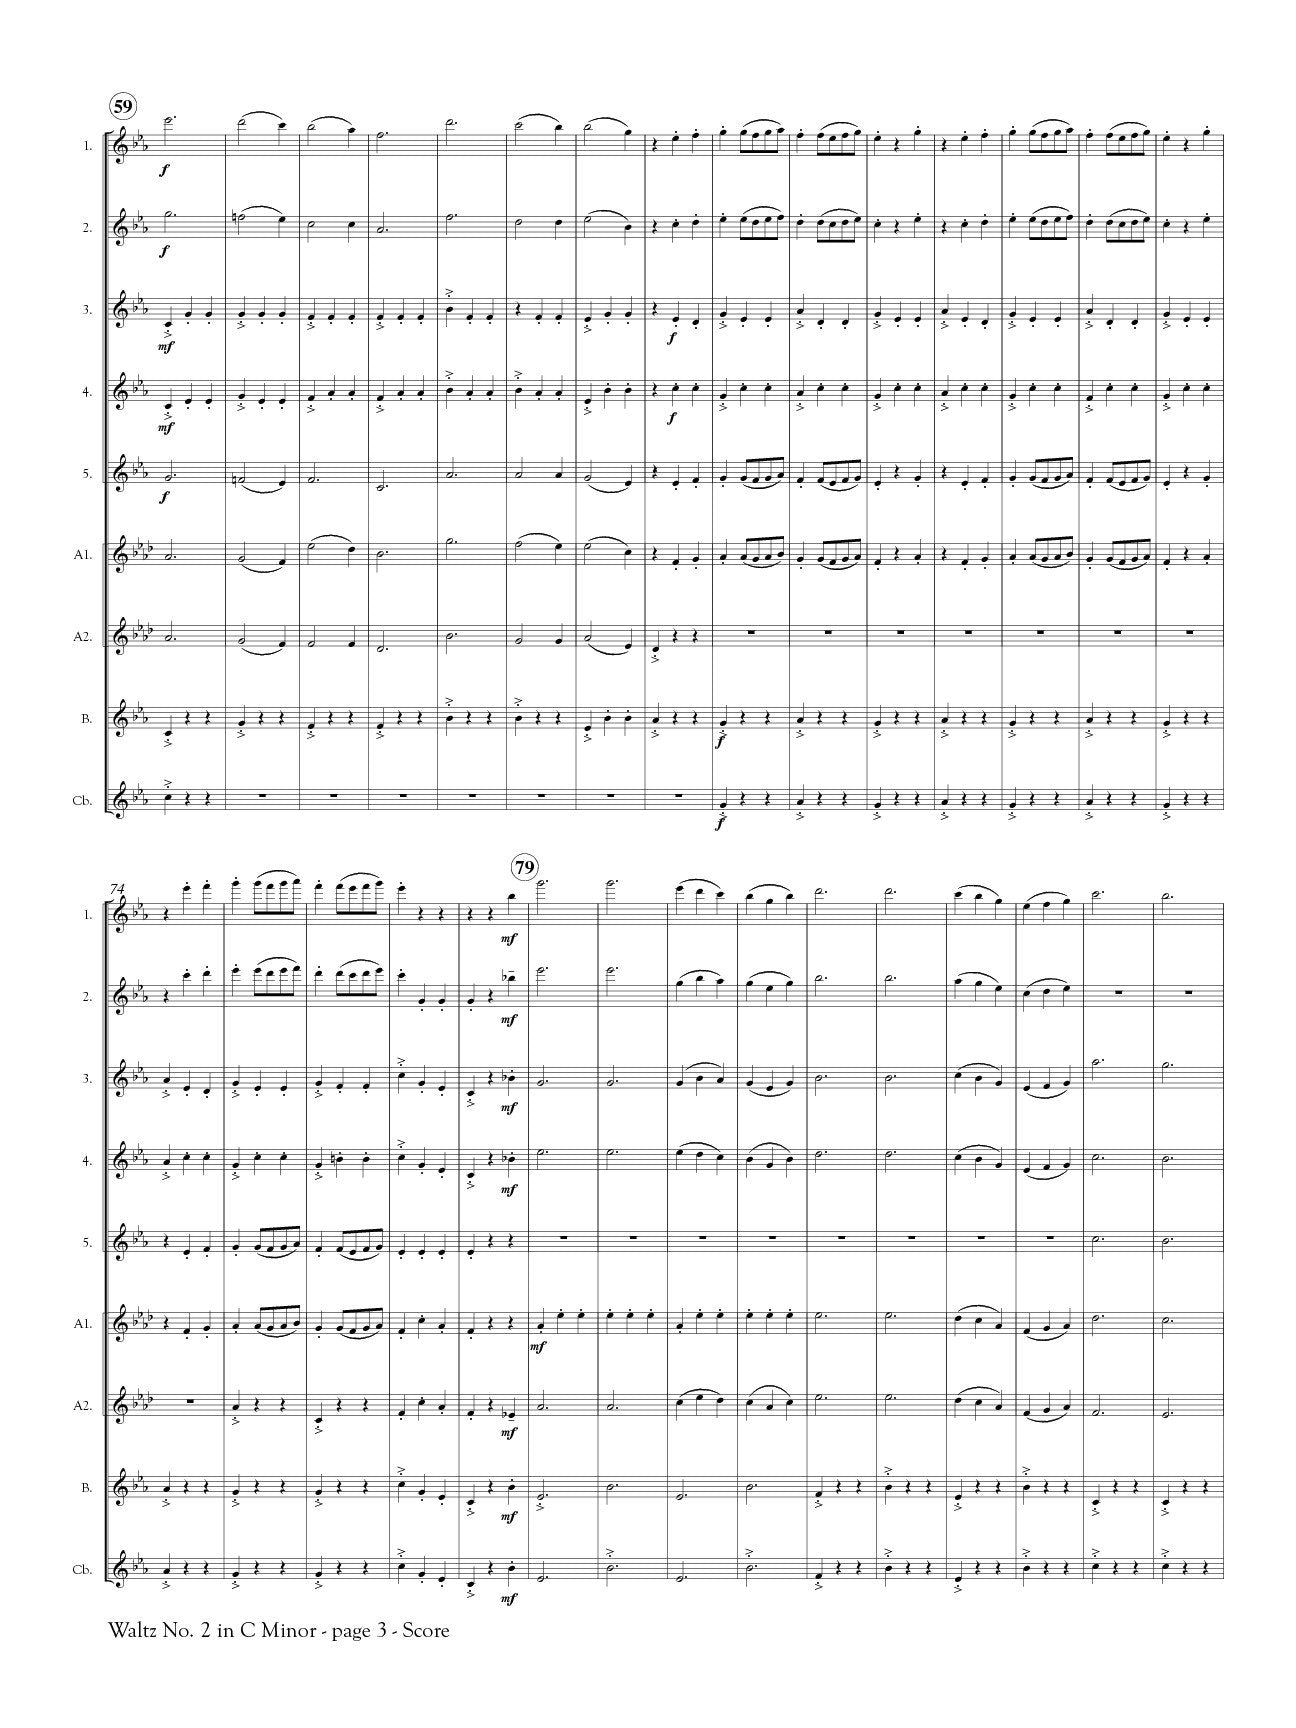 Shostakovich, Dmitri - Waltz No. 2 in C Minor for Flute Orchestra